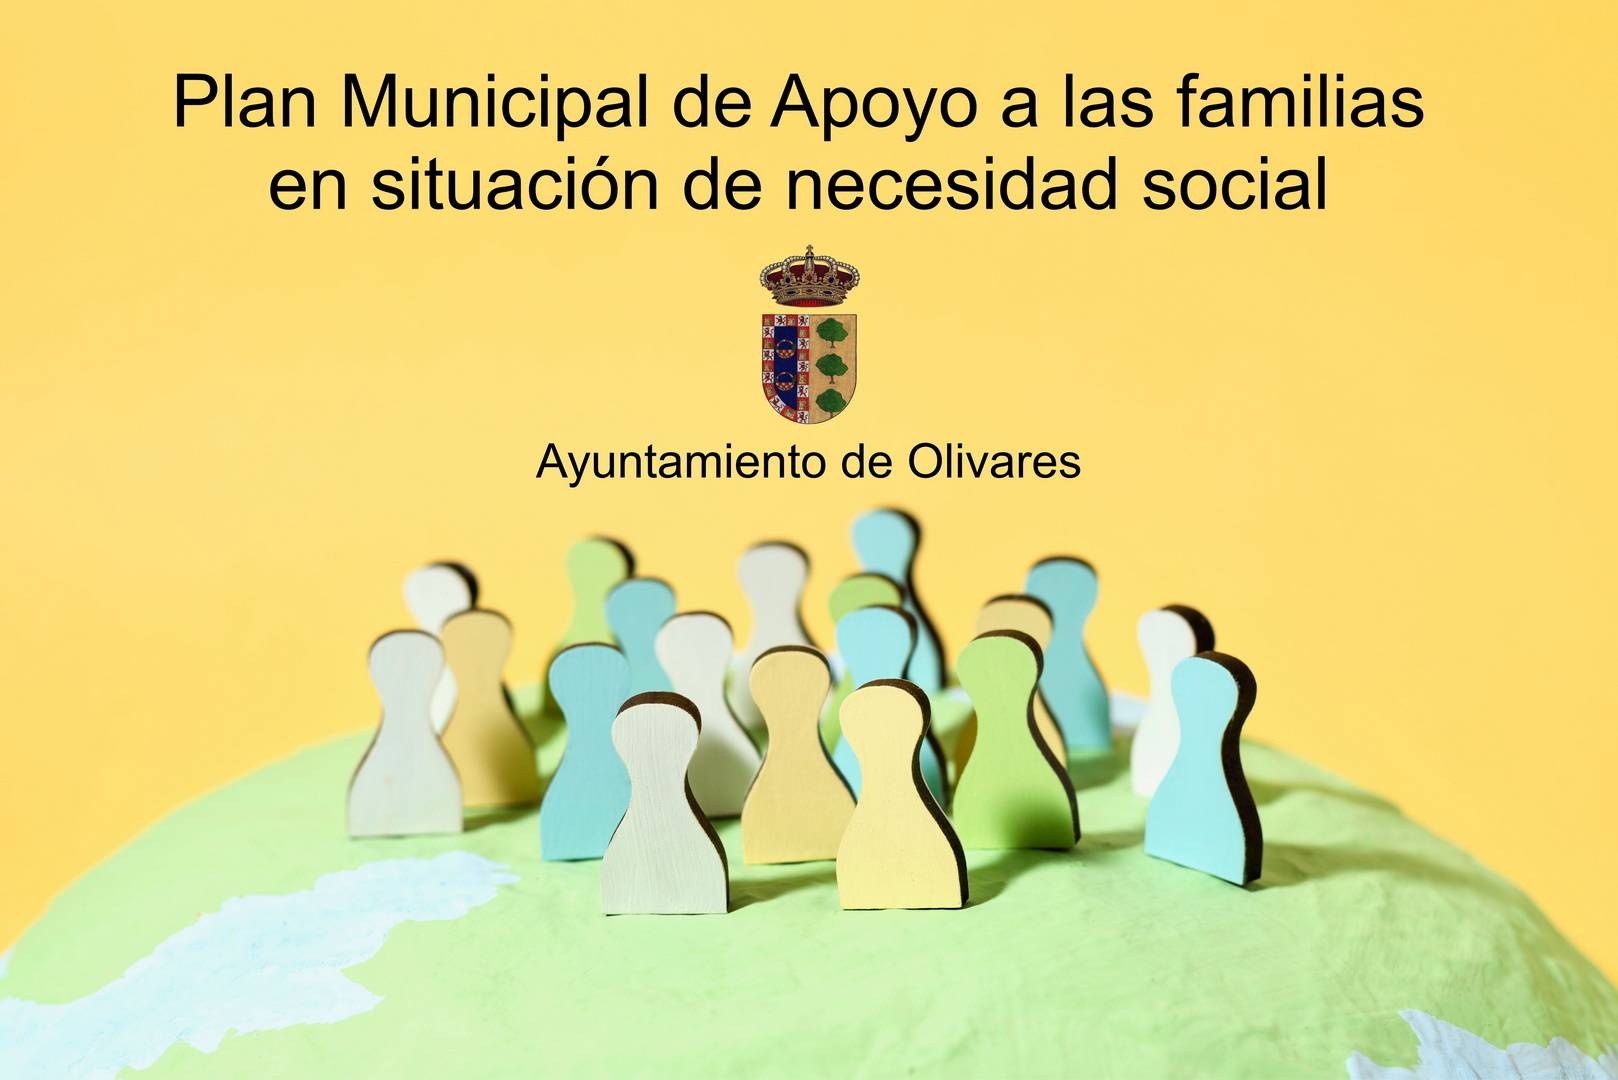 Plan Municipal de Apoyo a las familias en situación de necesidad social